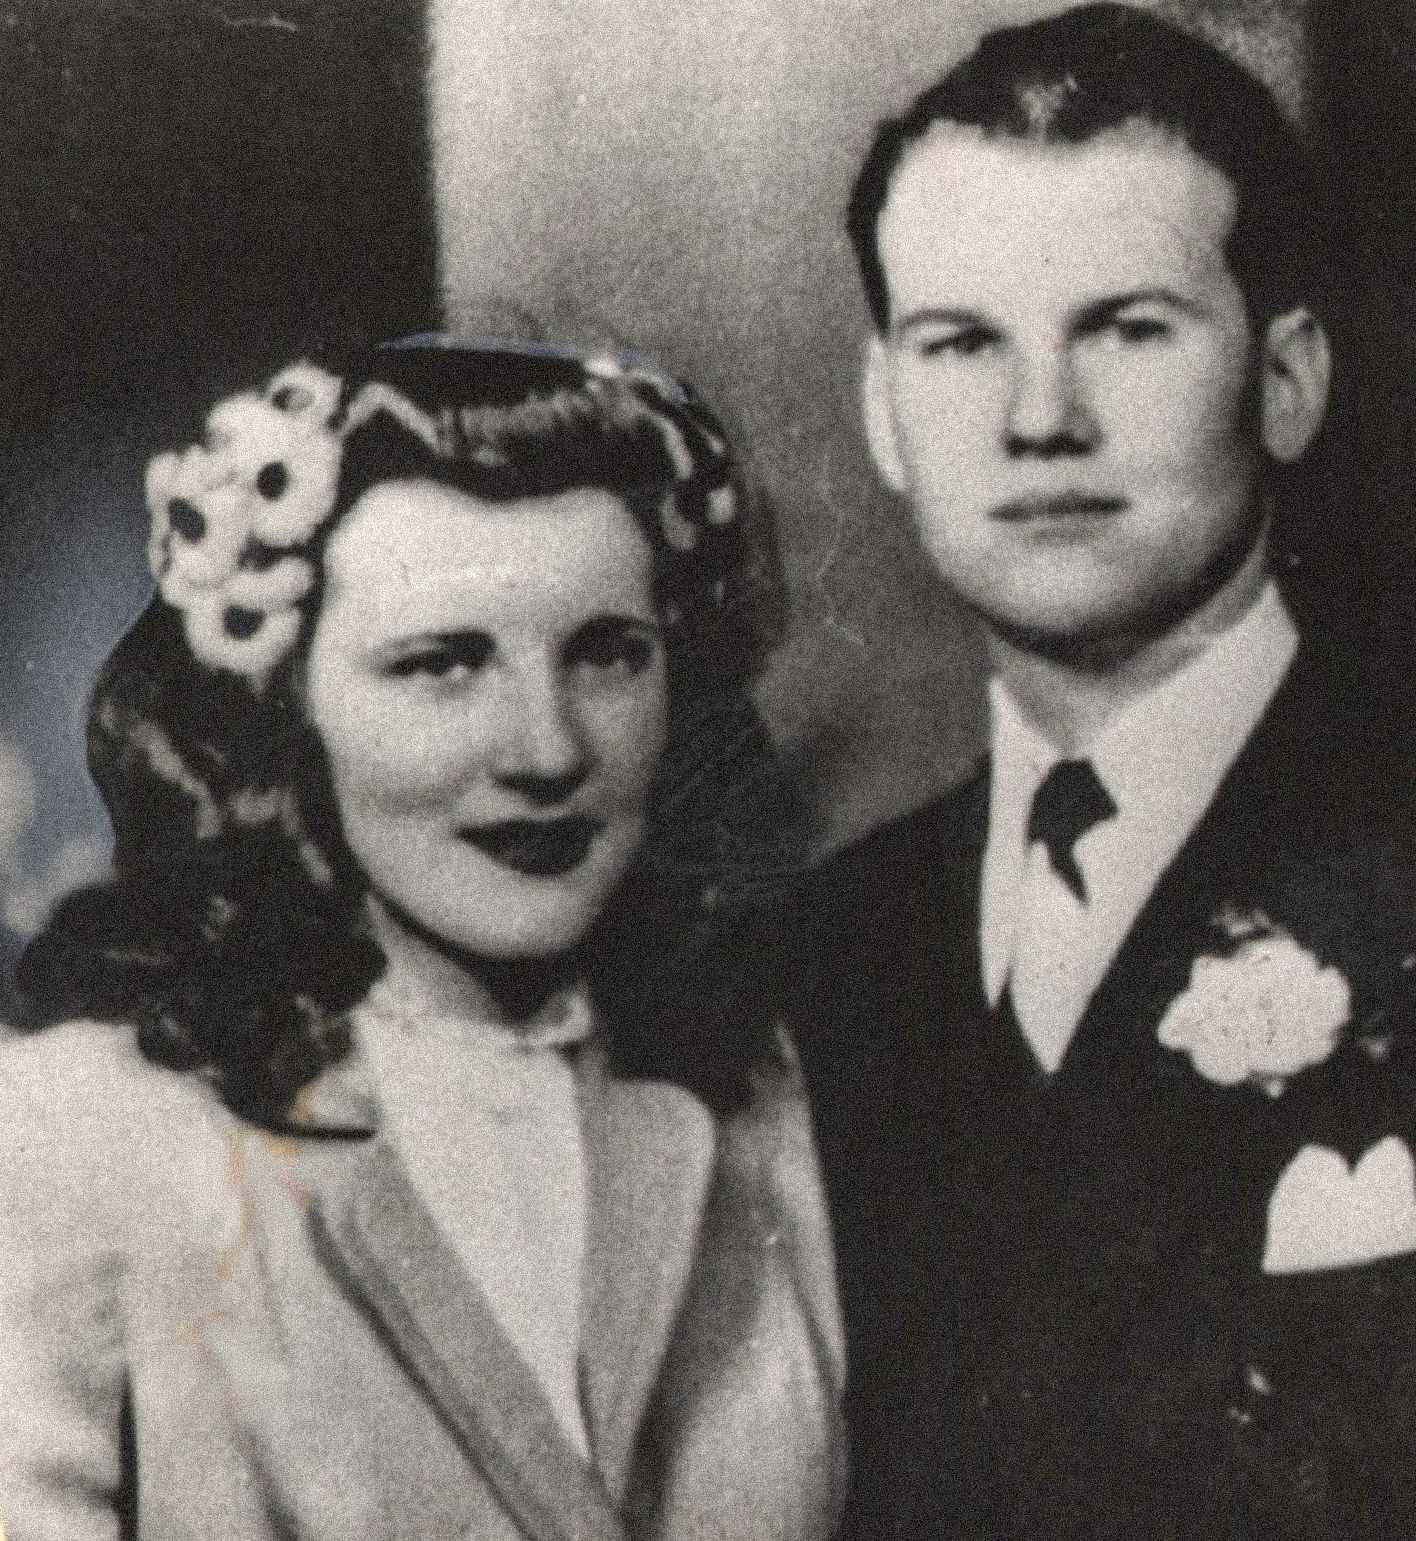 અહીં ચિત્રમાં સેમ અને મેરિલીન શેપર્ડ, એક યુવાન અને મોટે ભાગે ખુશ દંપતી છે. બંનેએ 21 ફેબ્રુઆરી, 1945ના રોજ લગ્ન કર્યા હતા અને તેમને એક બાળક હતું, સેમ રીસ શેપર્ડ. તેની હત્યા સમયે મેરિલીન તેના બીજા બાળક સાથે ગર્ભવતી હતી.